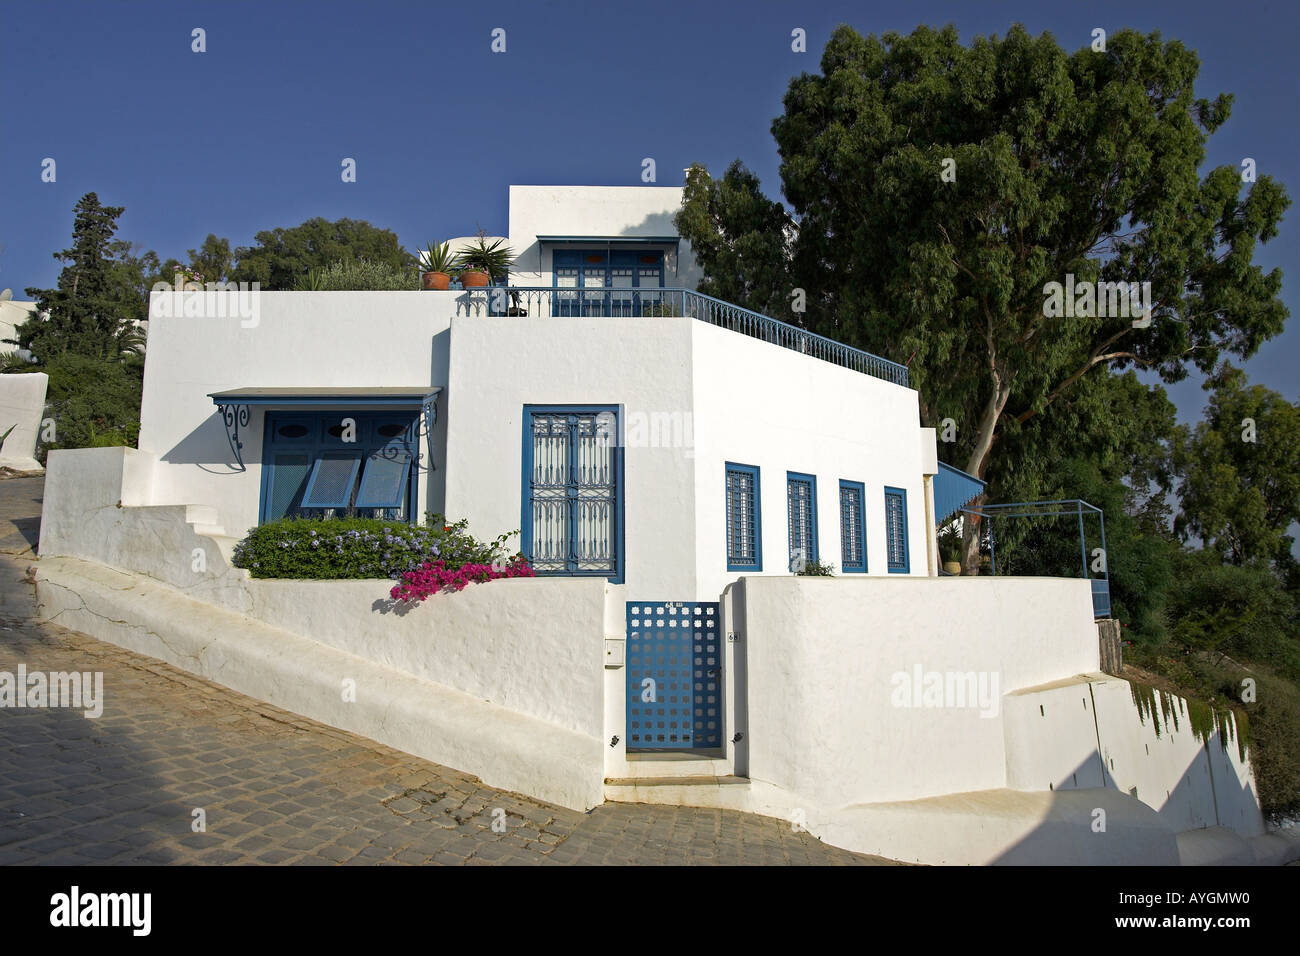 Accueil blanchis avec garniture bleue et lilas bougainvillea village Sidi Bou Said Tunisie Banque D'Images